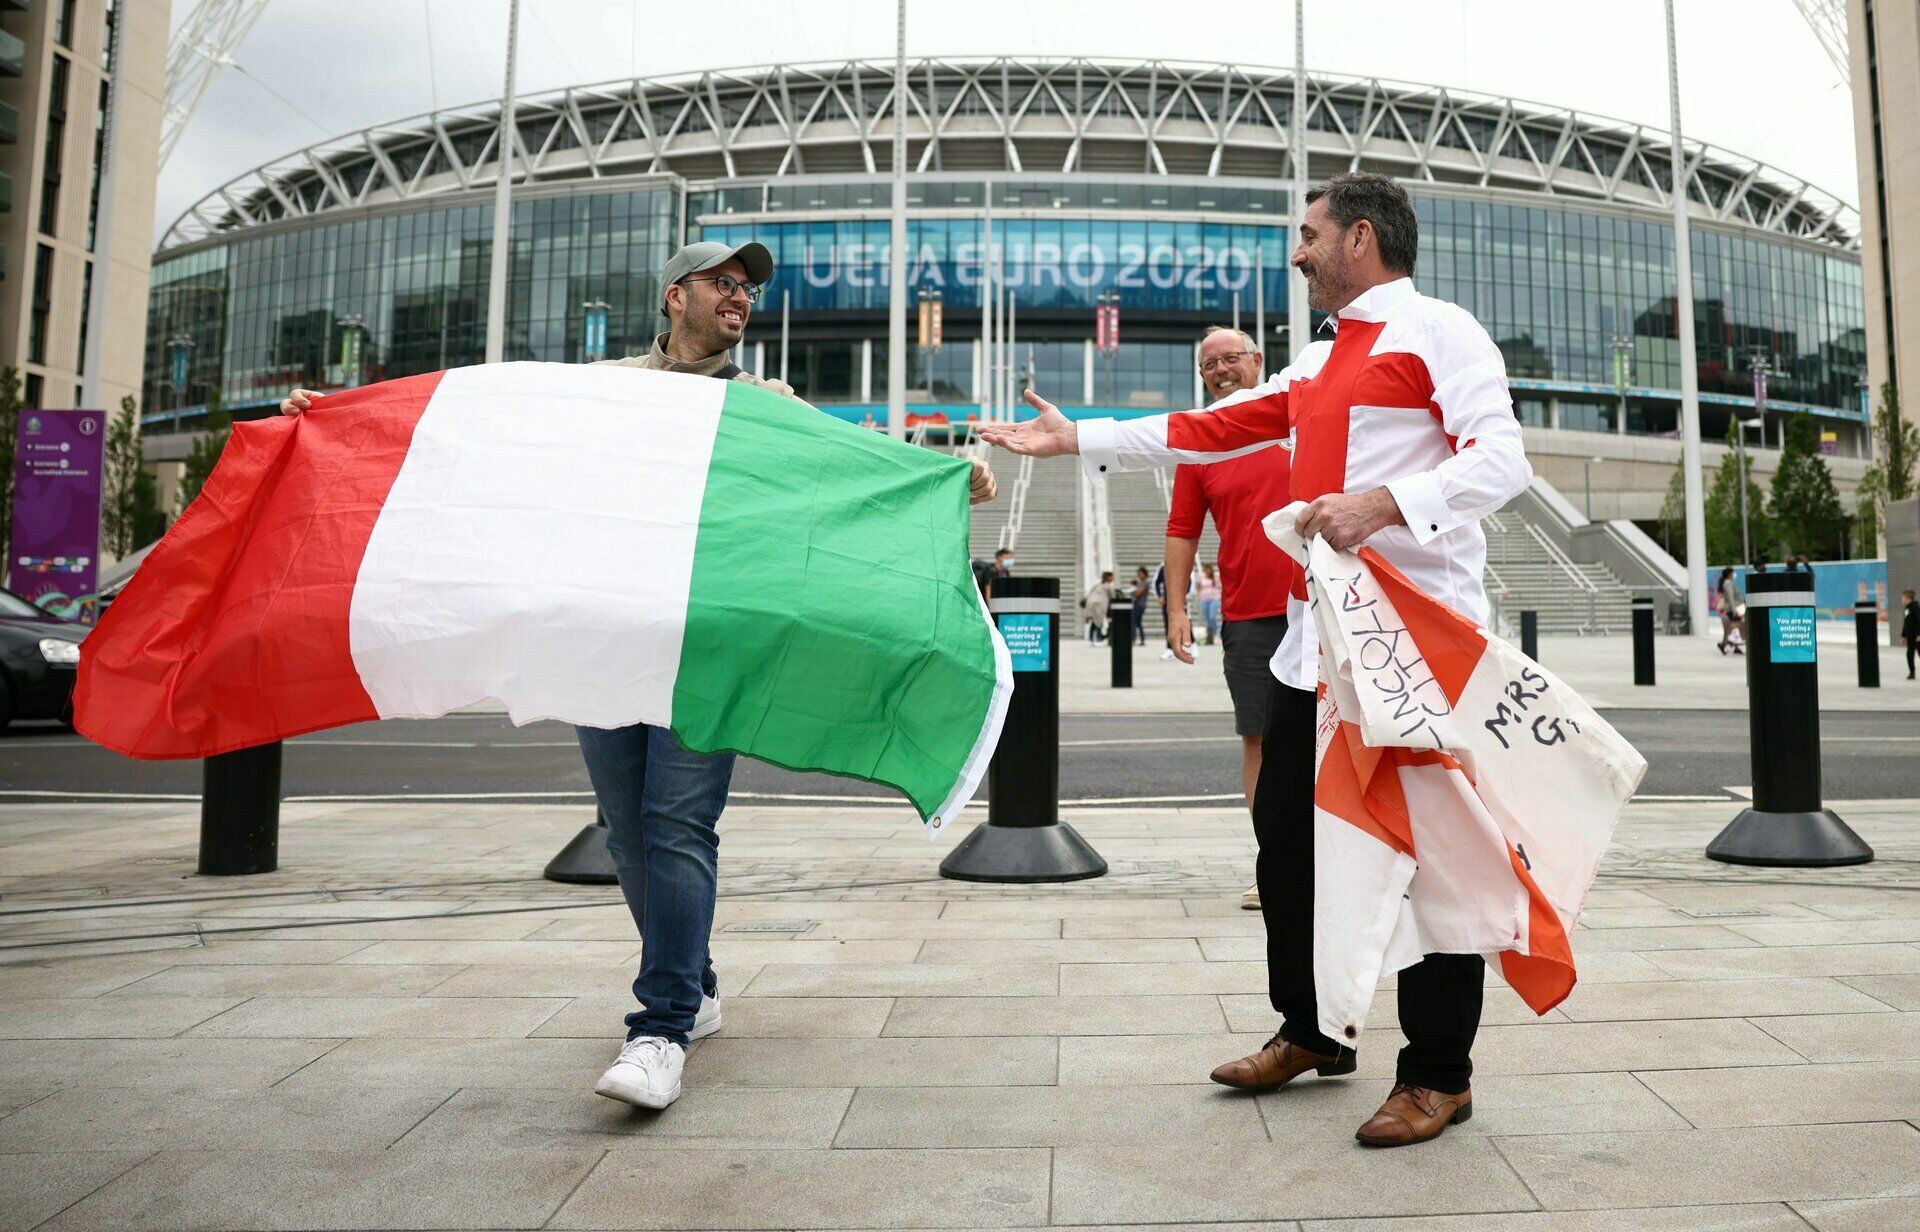 English drama at Wembley: Italy on penalties wins Euro 2020